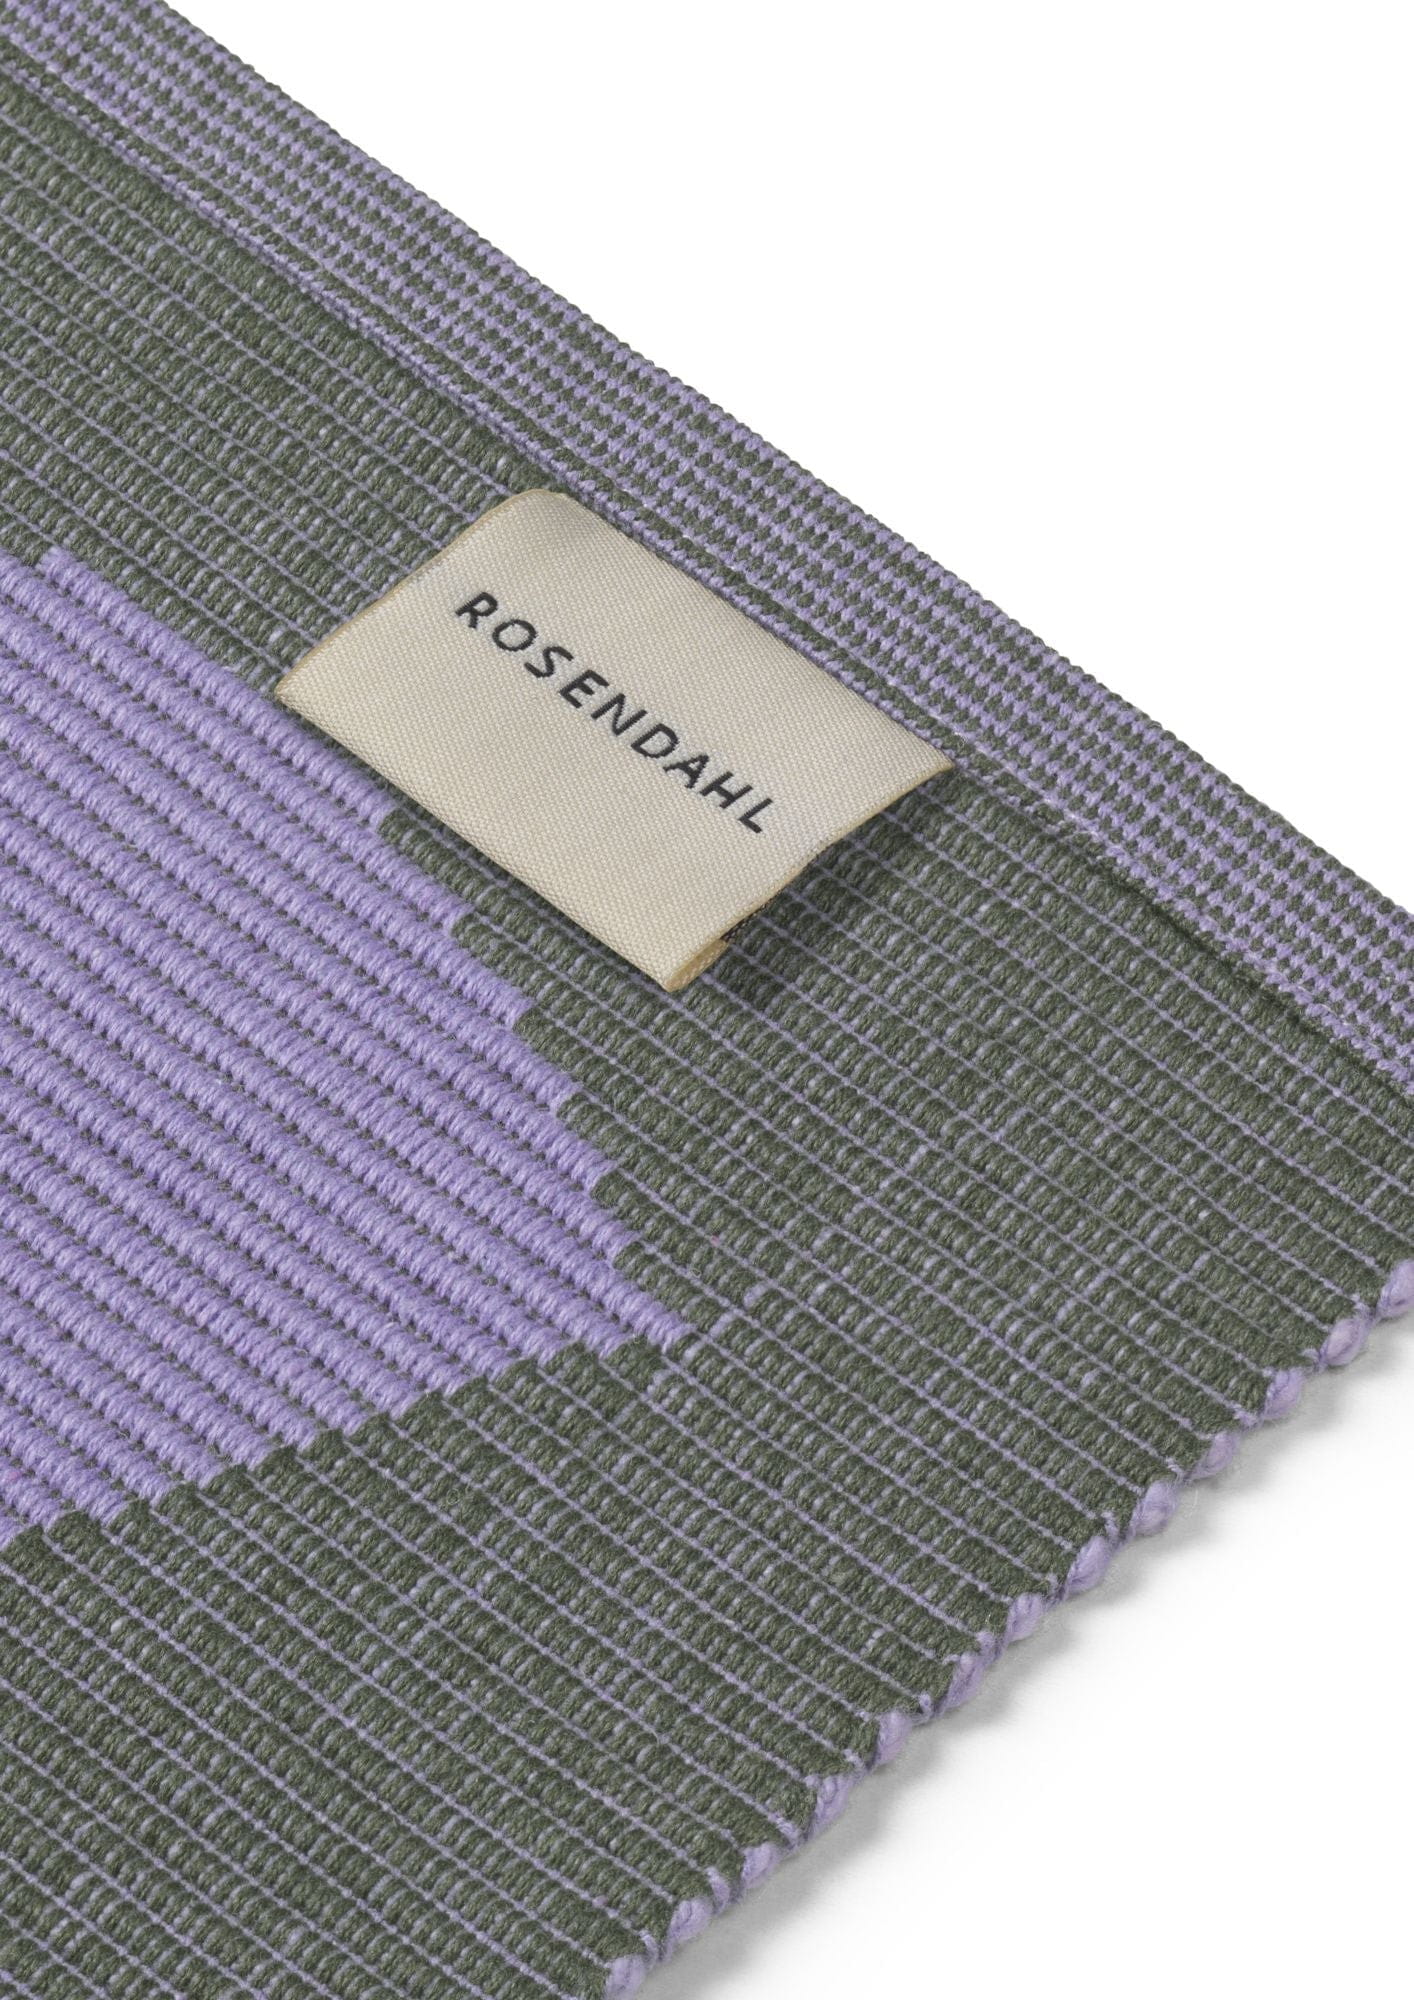 Rosendahl Rosendahl Textiles Outdoor Natura Placemat 43x30 Cm, Green